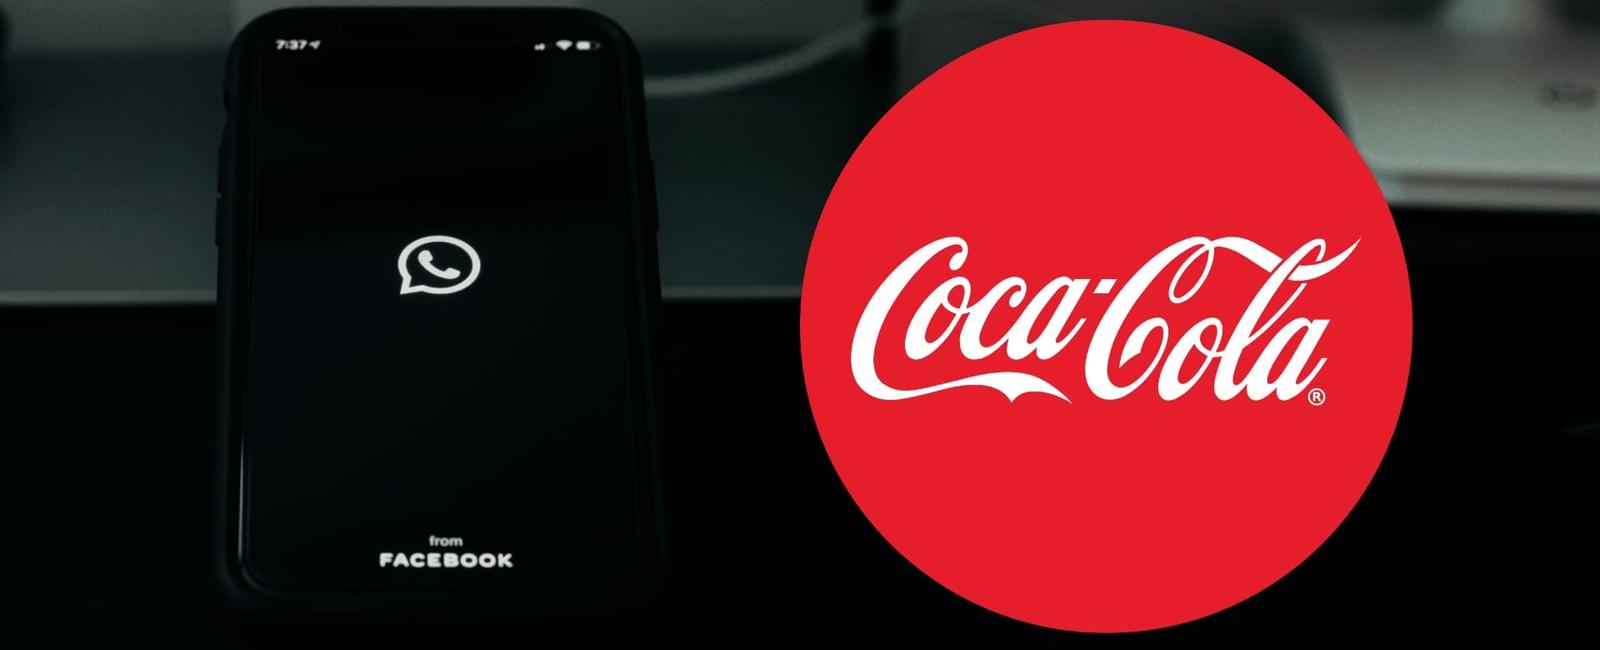 Nuevo engaño vía WhatsApp suplanta identidad de Coca-Cola